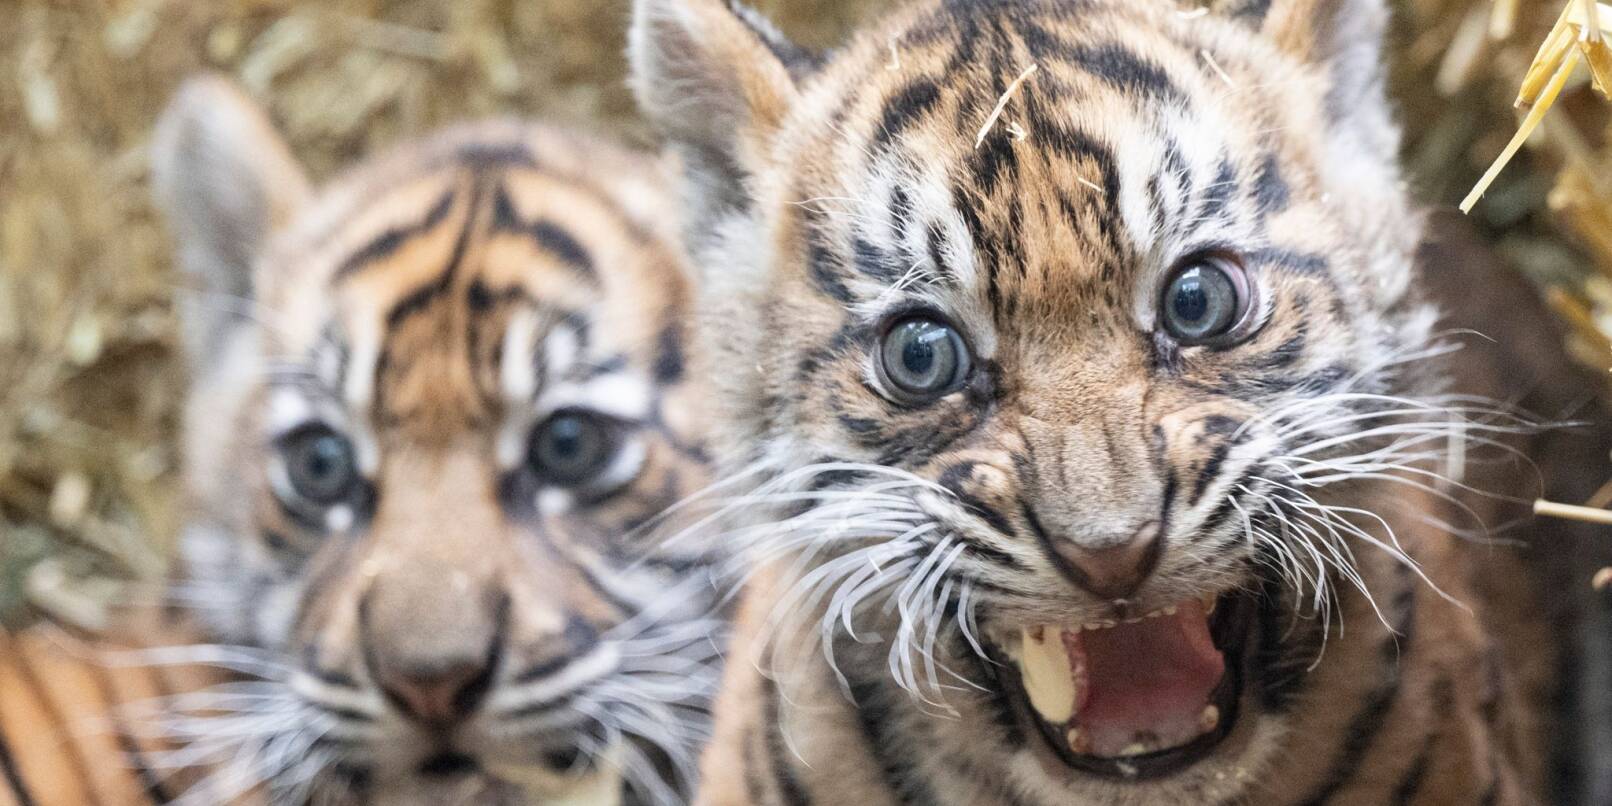 Zwei kleine Sumatra-Tiger werden im Zoo Frankfurt erstmals der Öffentlichkeit vorgestellt.